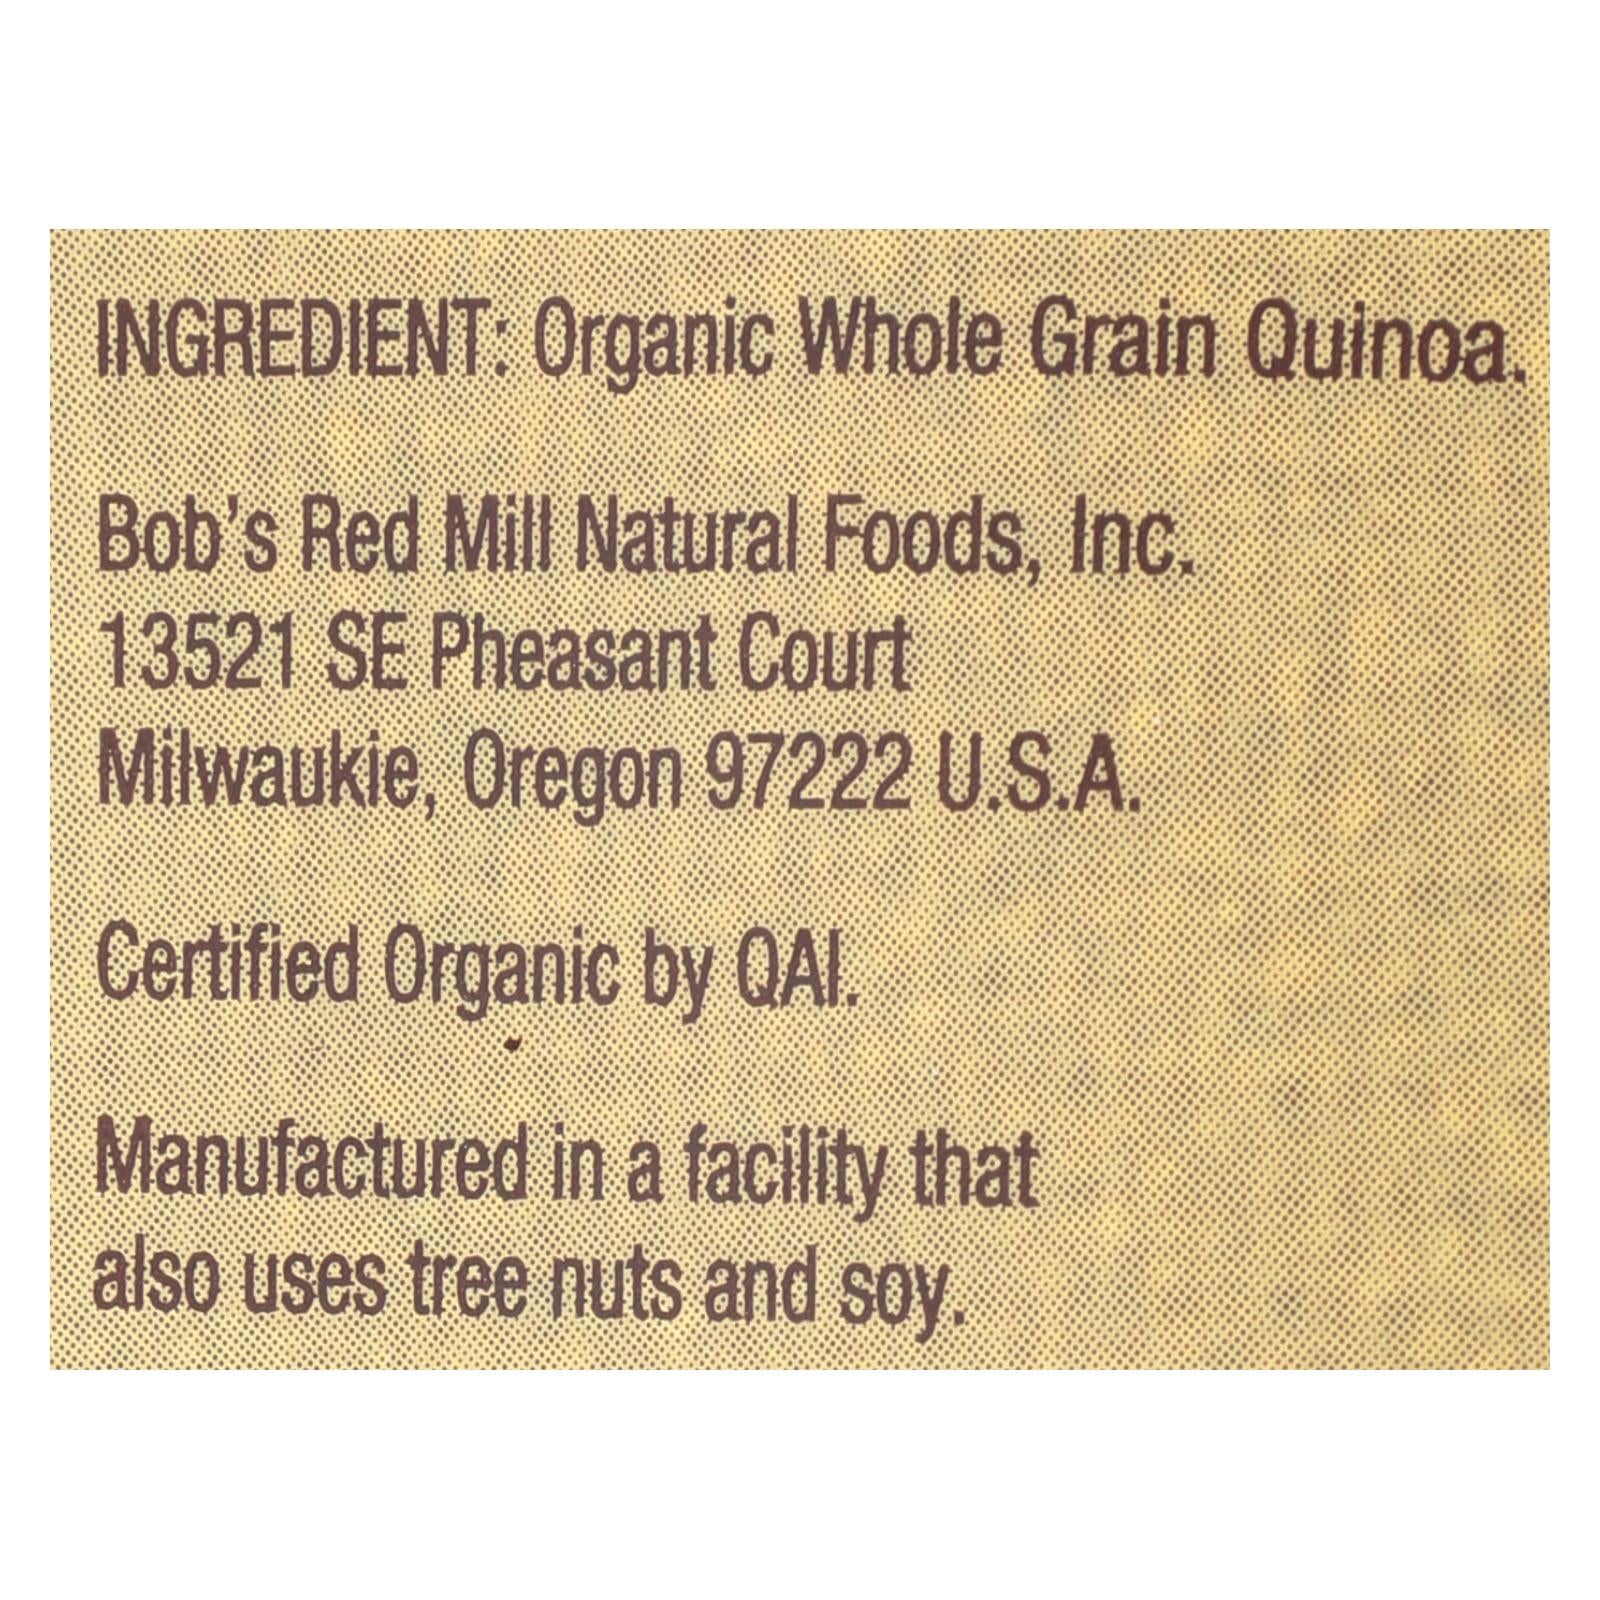 Bob's Red Mill Organic Whole Grain Quinoa - Case Of 4 - 26 Oz